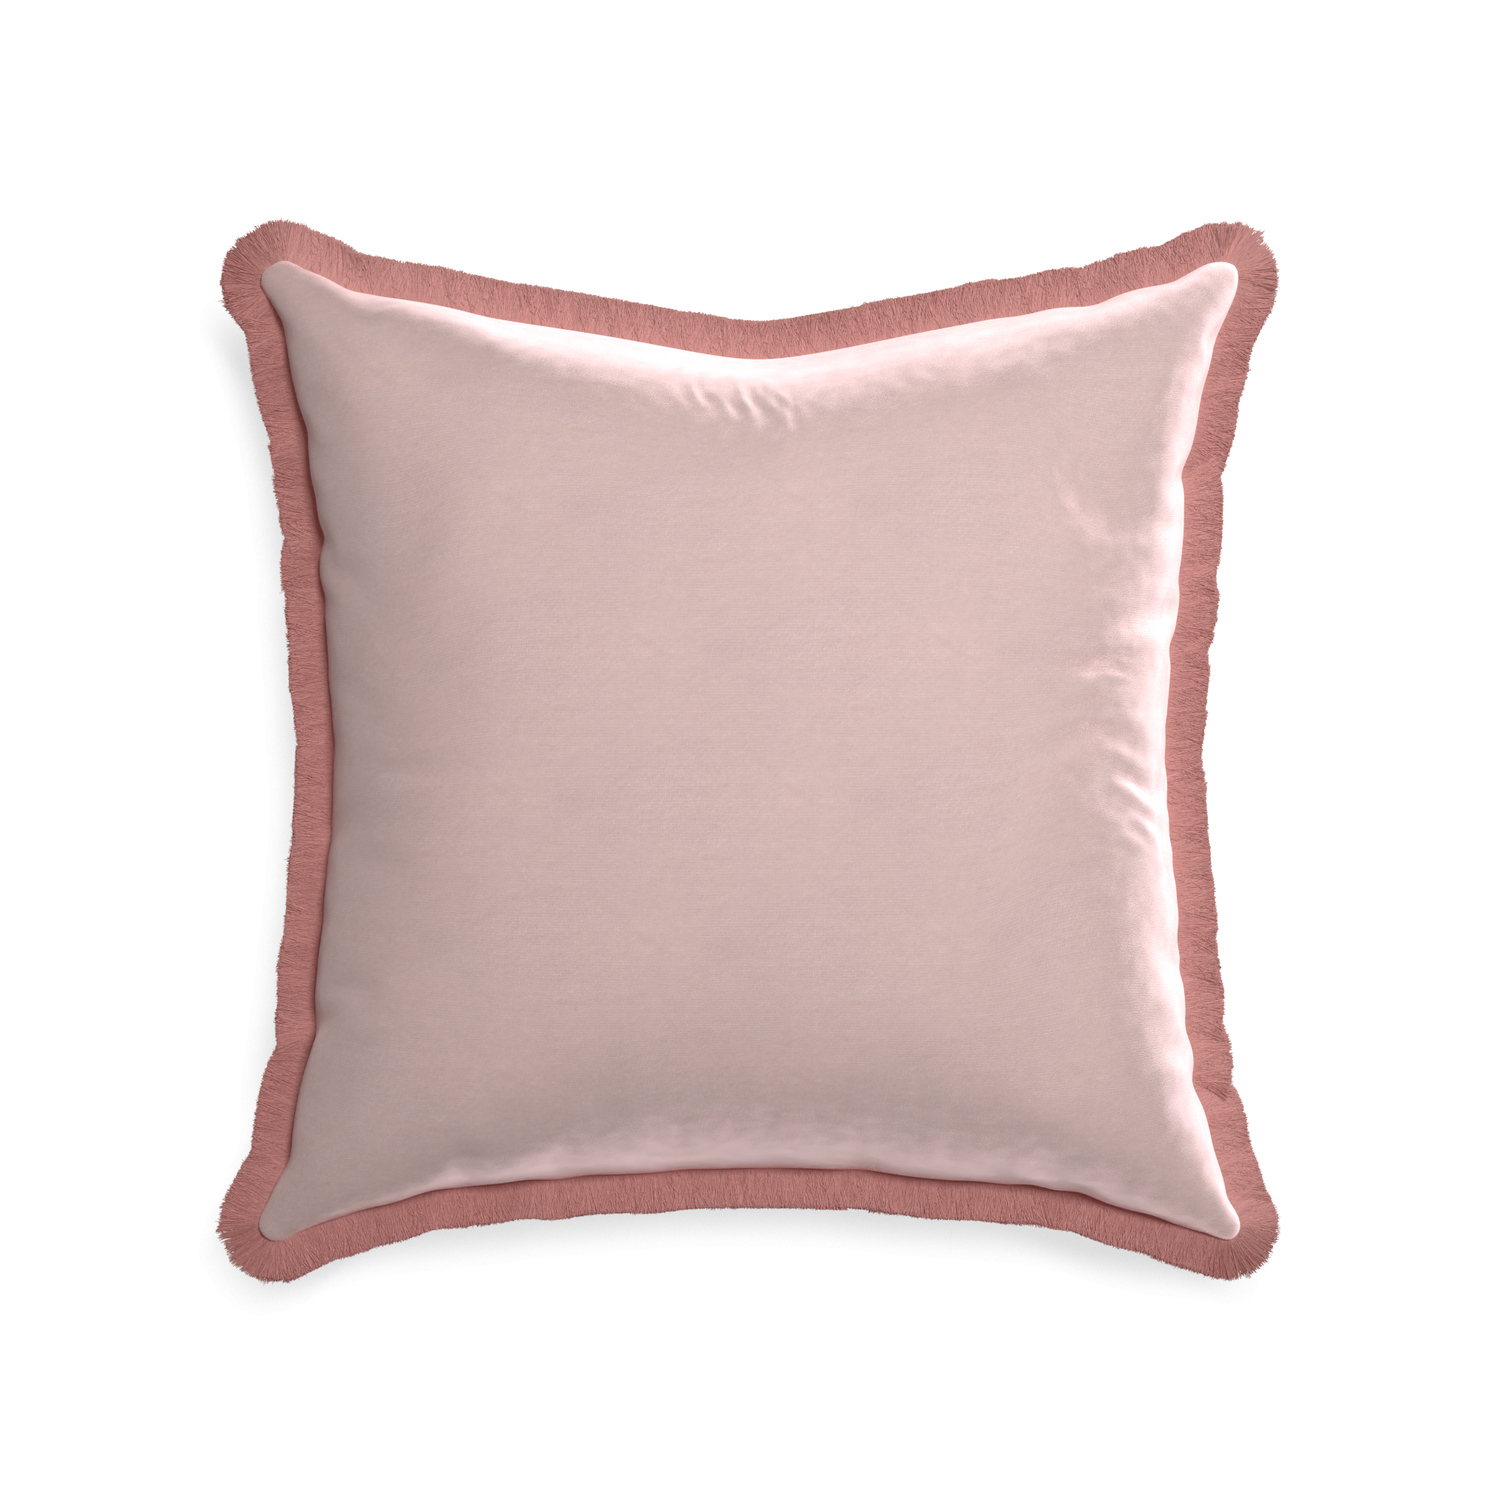 square light pink velvet pillow with dusty rose fringe